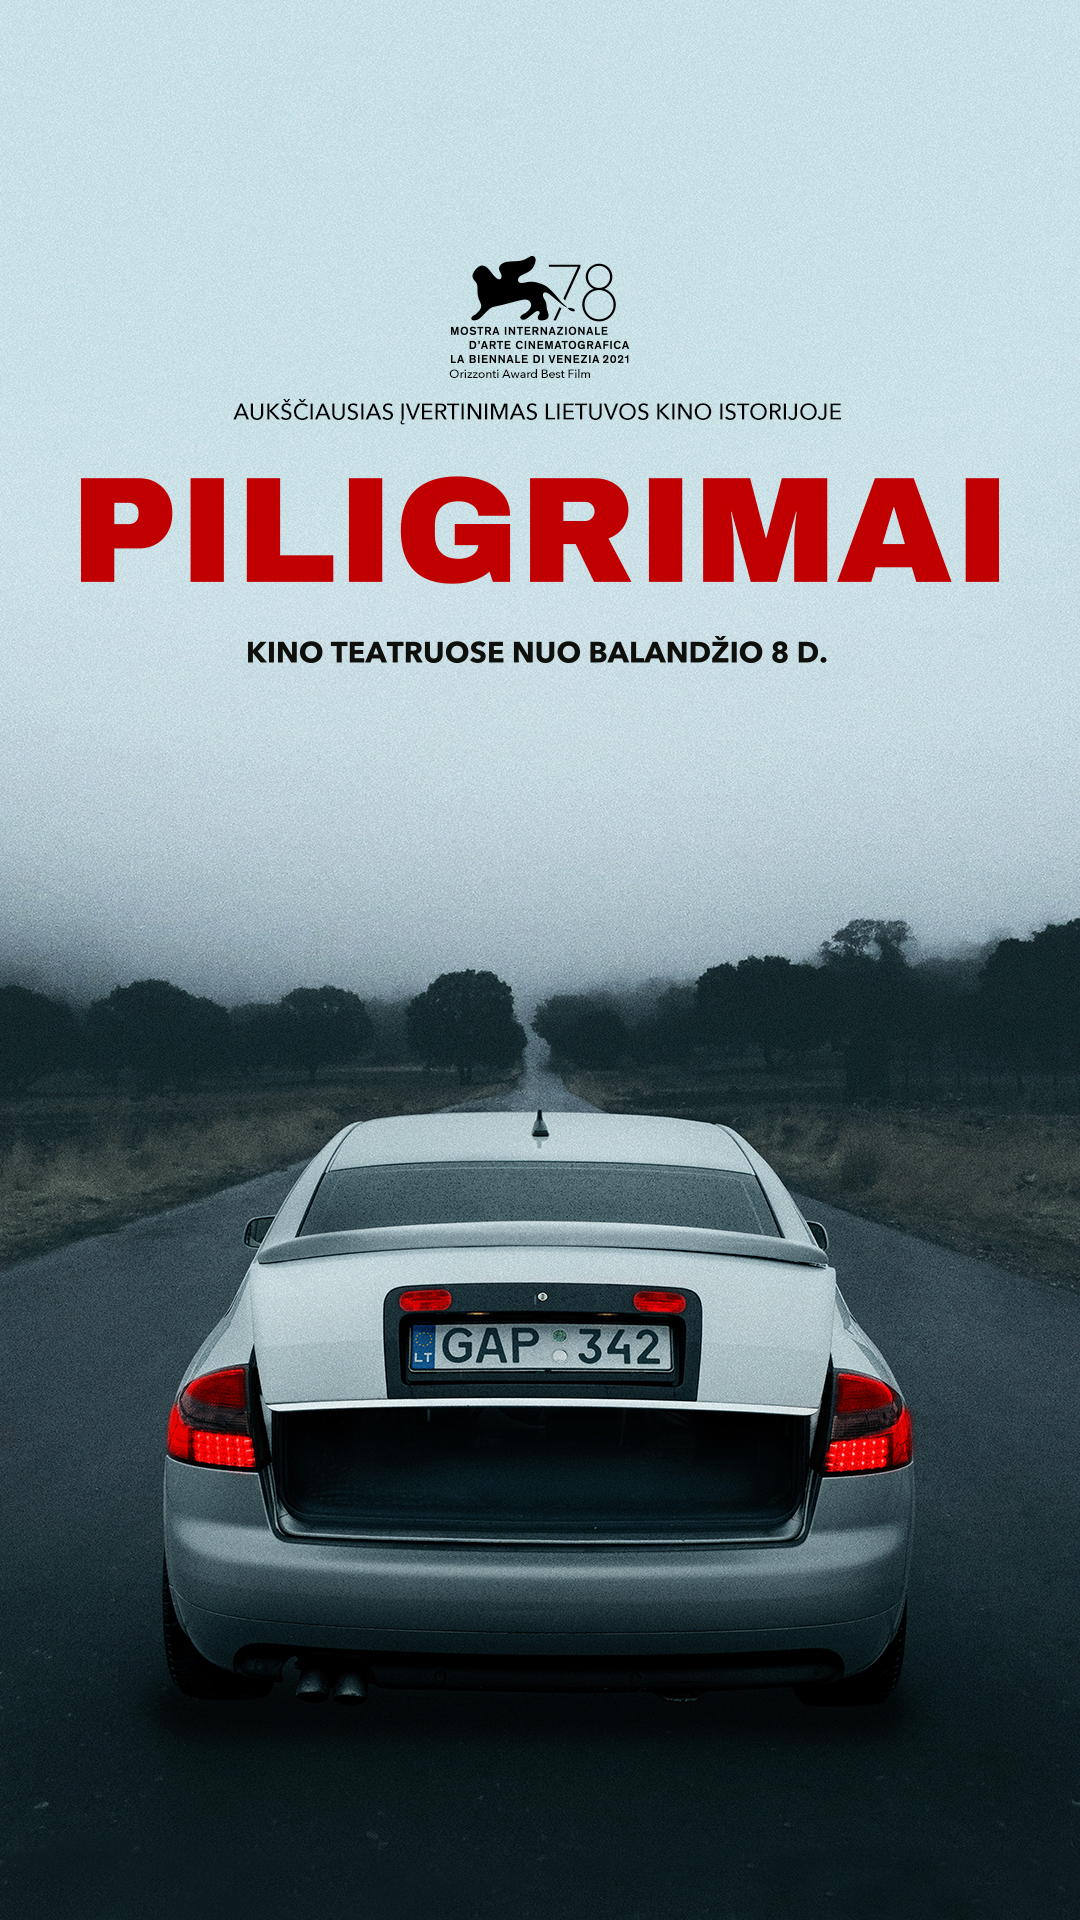 Piligrimai (Pilgrims)